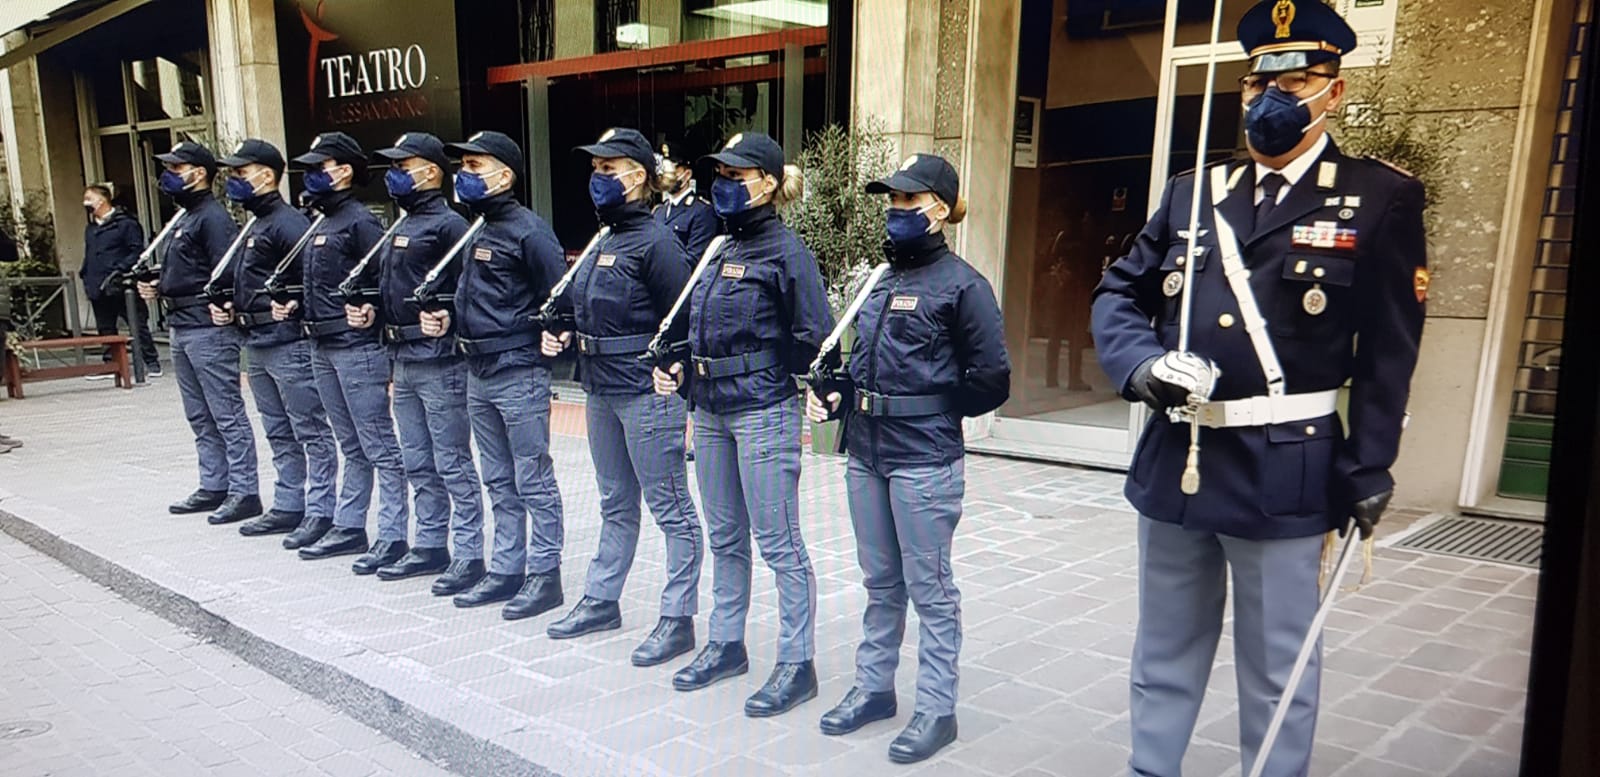 Alessandria "città sicura" secondo il report della Polizia